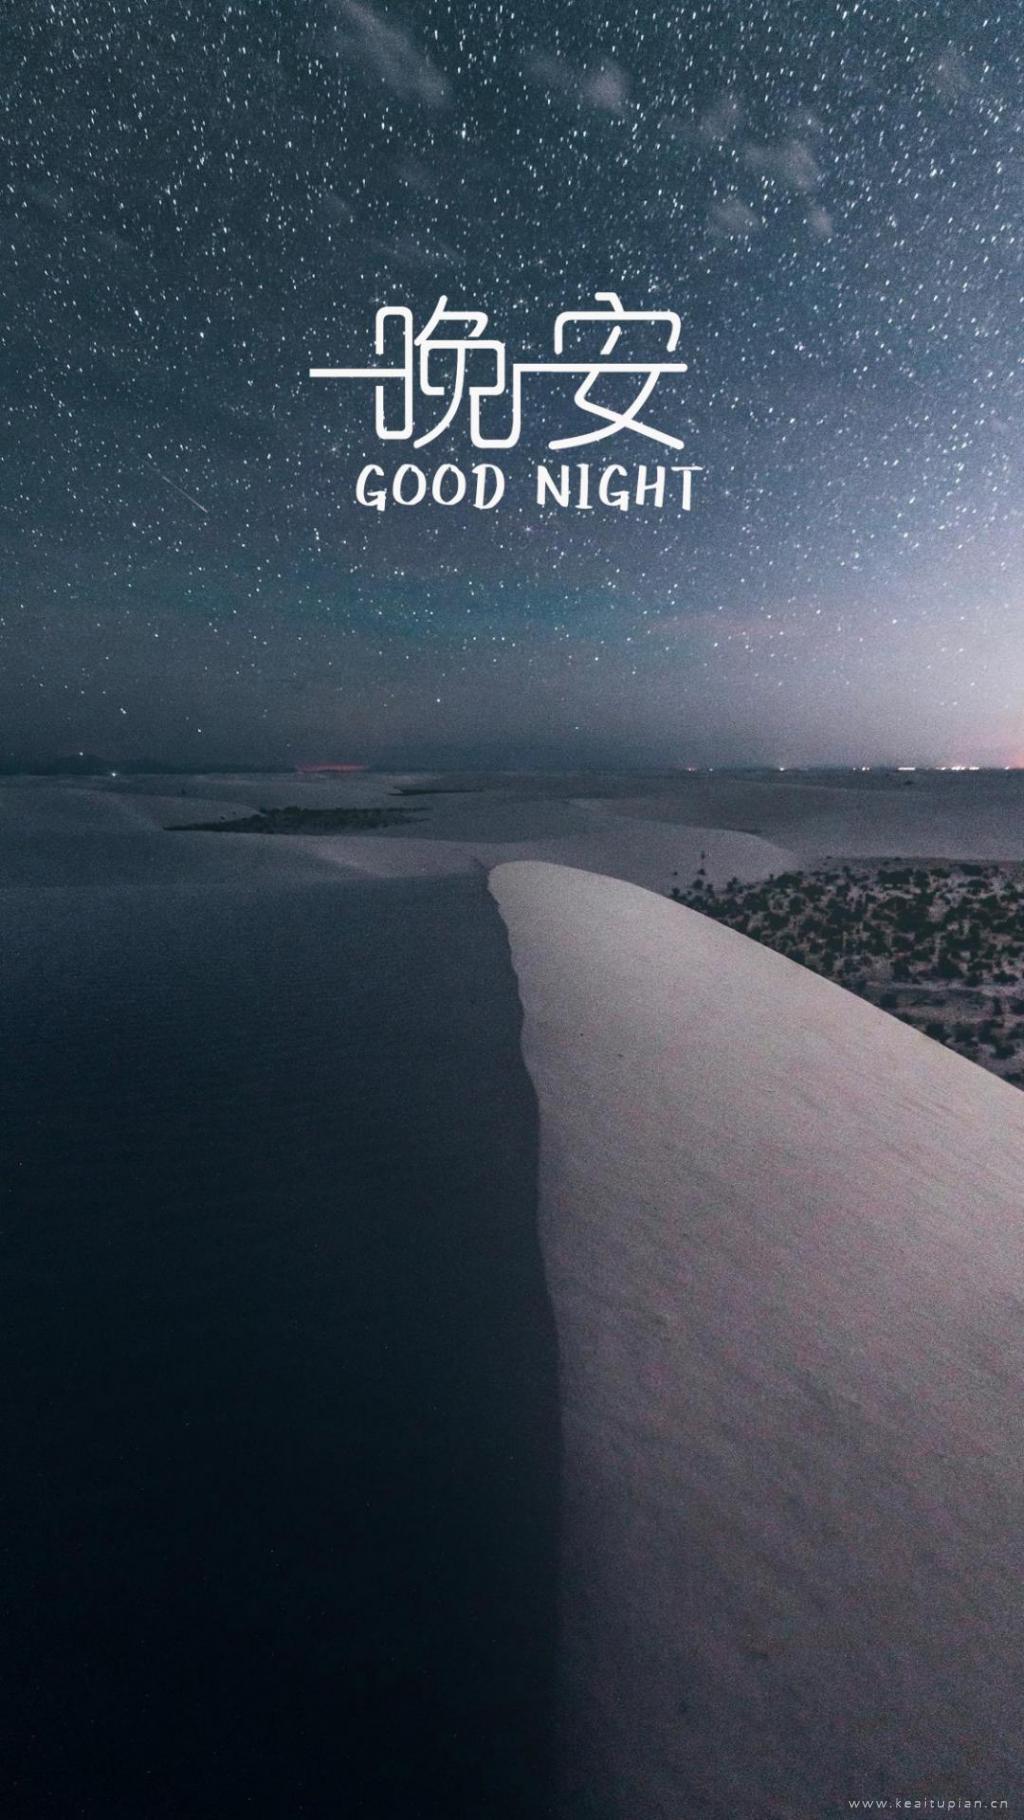 晚安文字精选配图沙漠夜晚繁星唯美风景图片